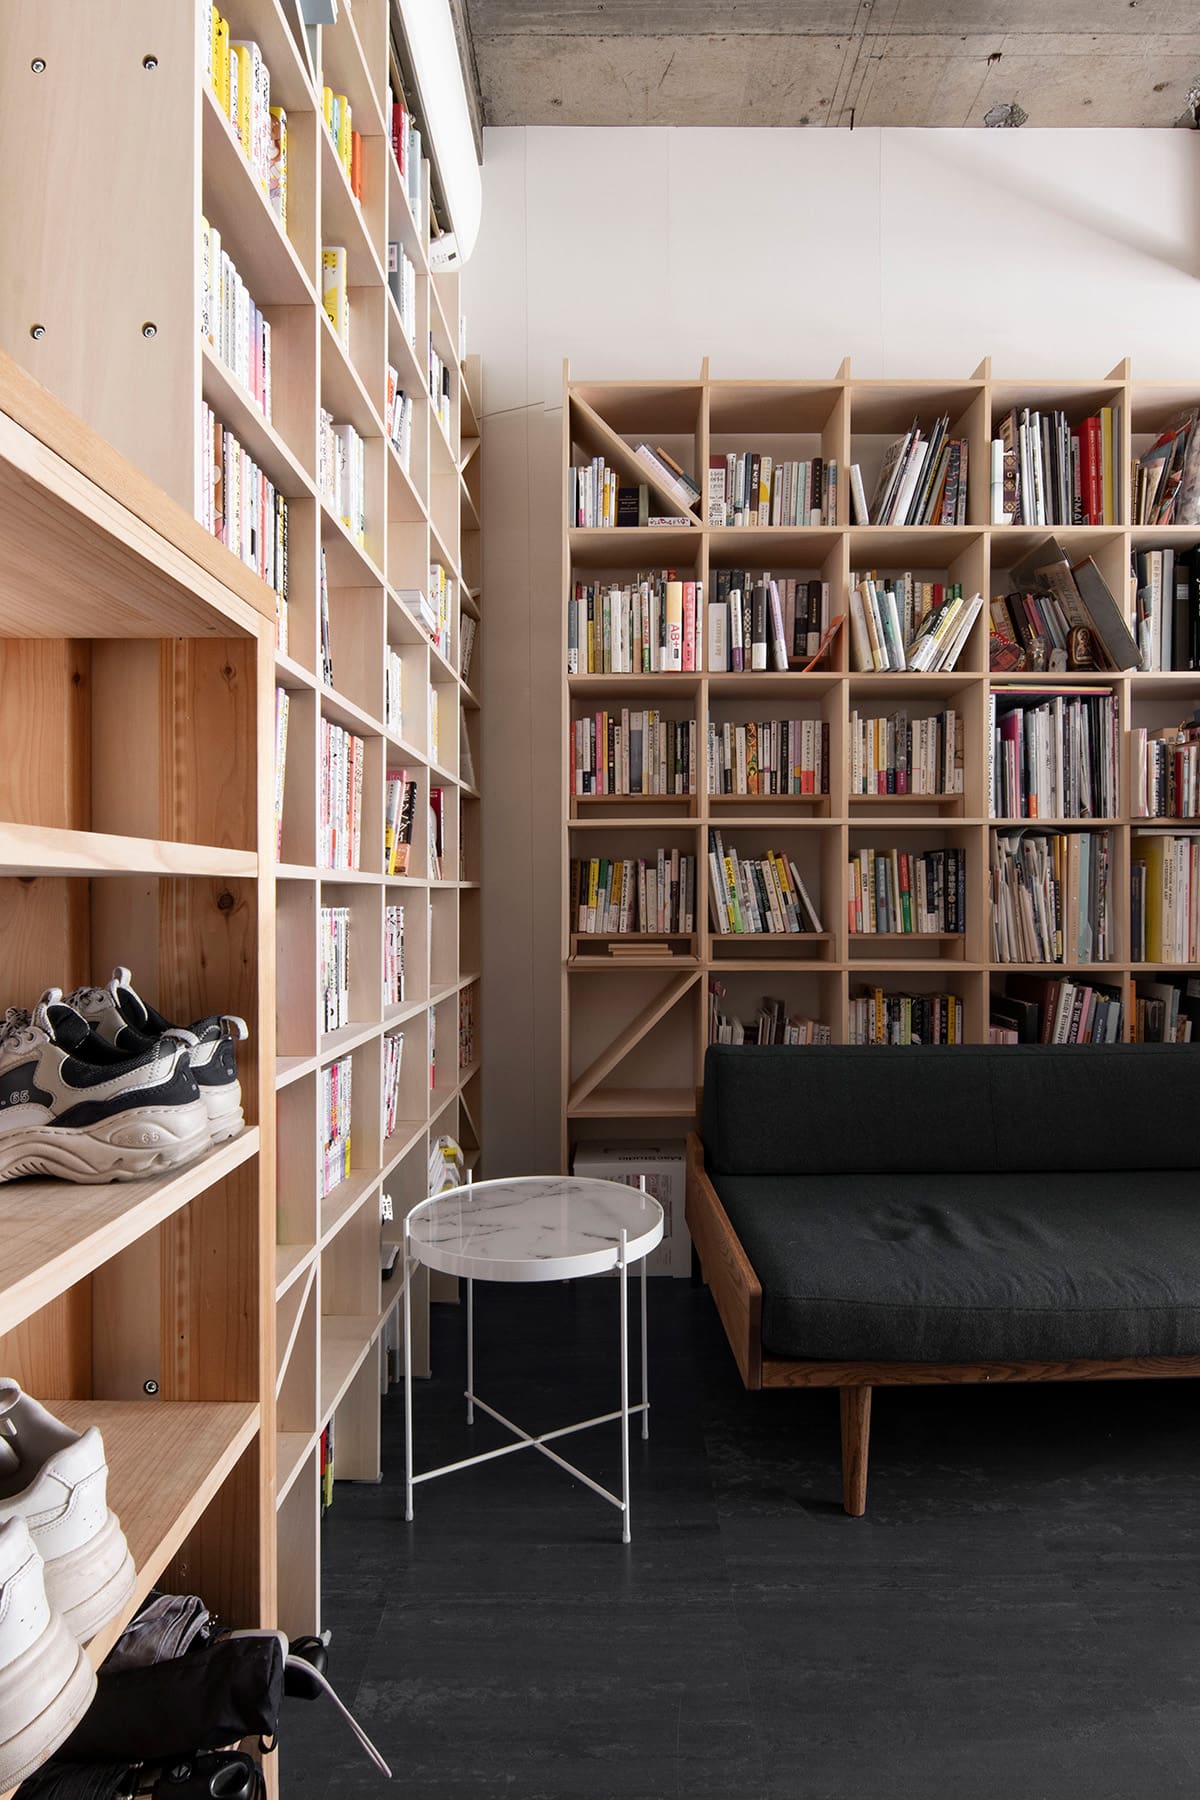 【File 814】お持ちの家具と組み合わせて上手に使う - Shelf 壁一面の本棚 奥行250mm - マルゲリータお客様事例